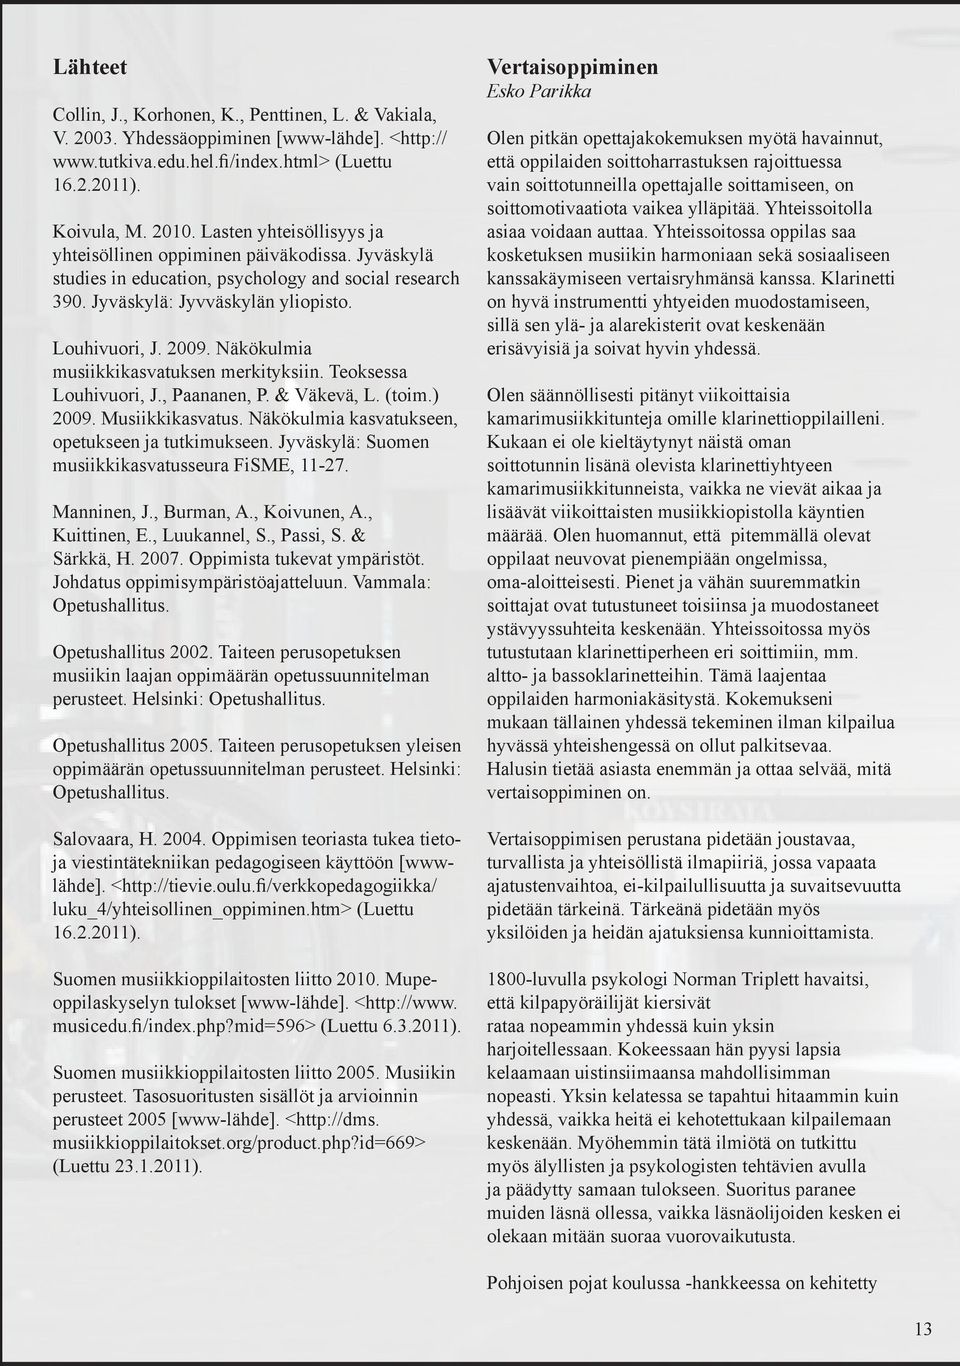 Näkökulmia musiikkikasvatuksen merkityksiin. Teoksessa Louhivuori, J., Paananen, P. & Väkevä, L. (toim.) 2009. Musiikkikasvatus. Näkökulmia kasvatukseen, opetukseen ja tutkimukseen.